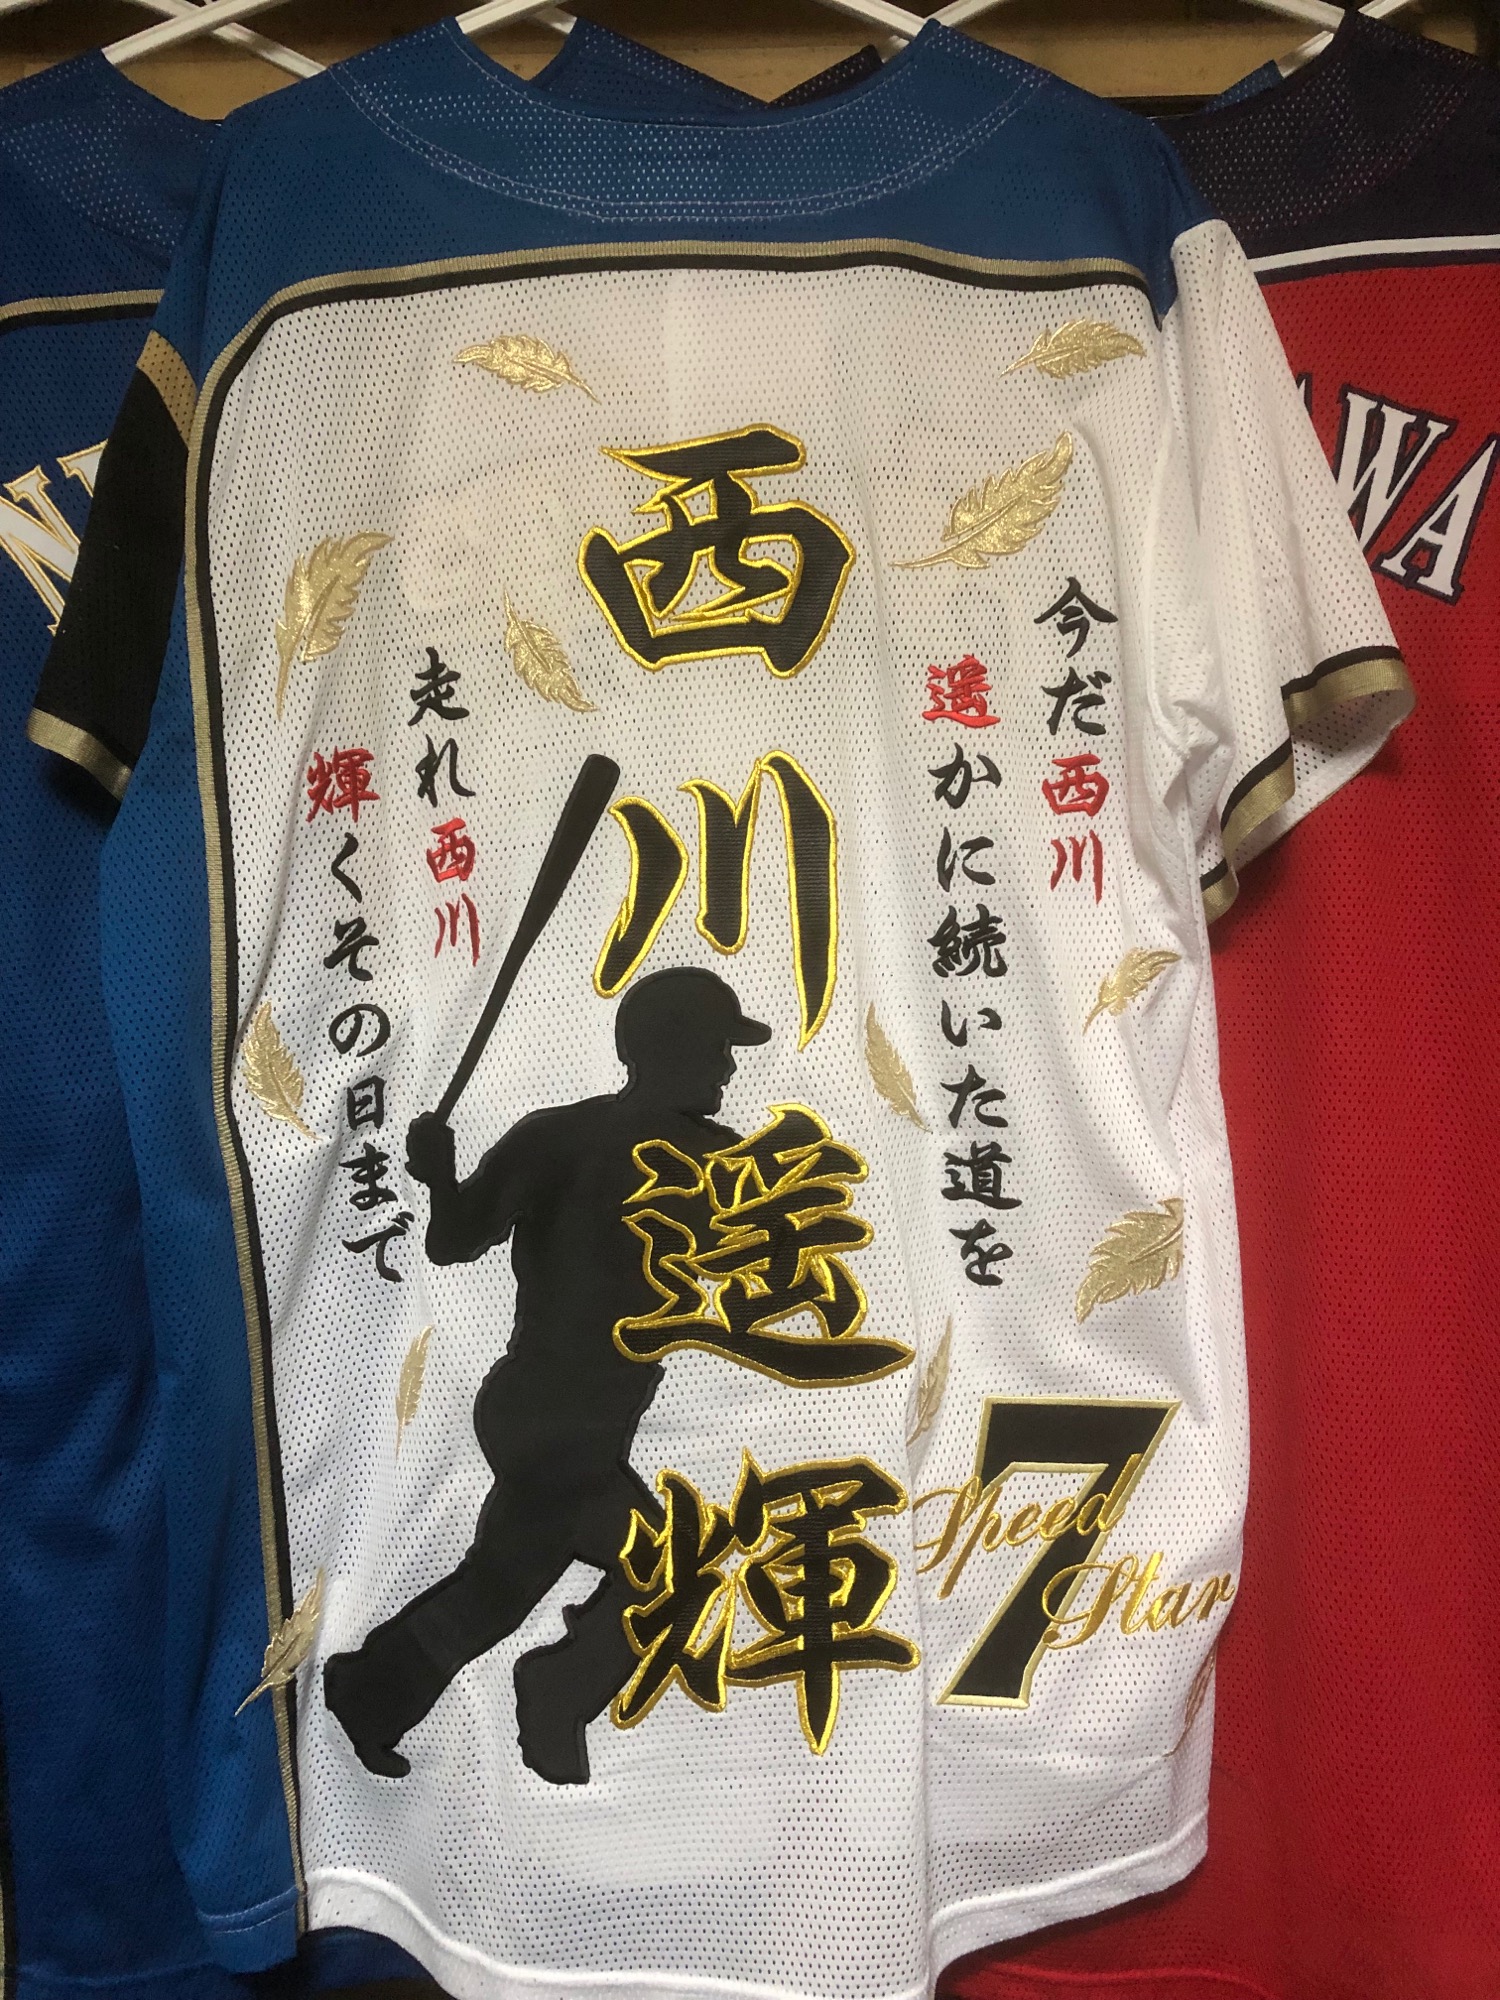 北海道日本ハムファイターズ 西川遥輝選手の刺繍ユニフォーム – お客様 